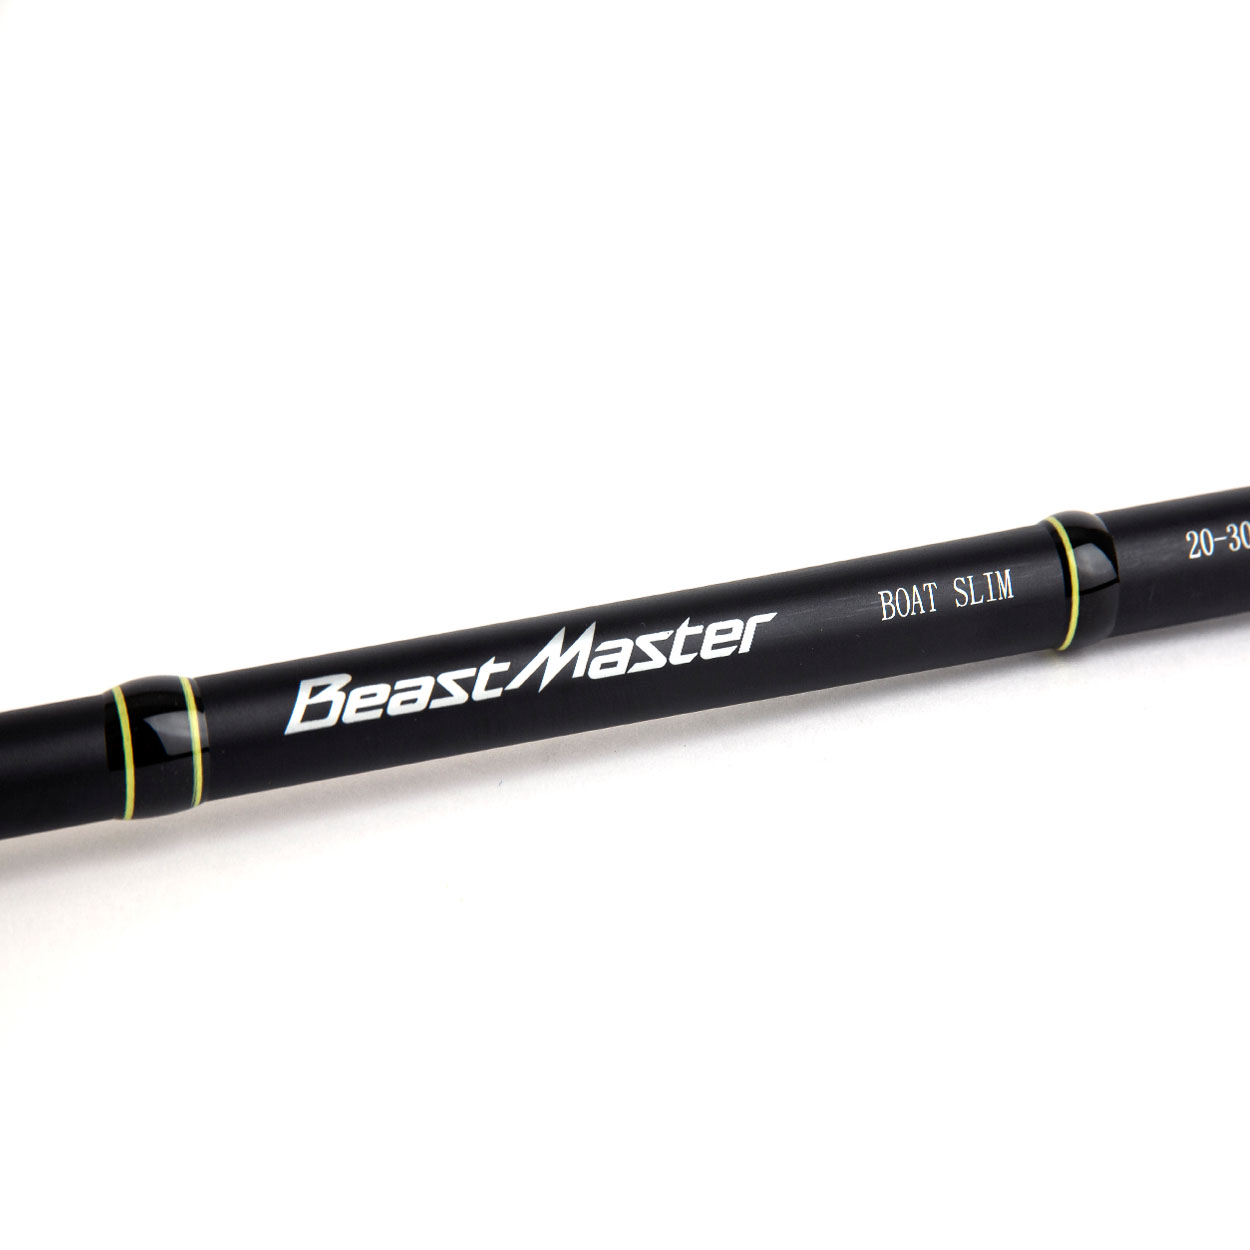 Καλάμι SHIMANO Beastmaster BX Slim 20- 30lbs 2.29m